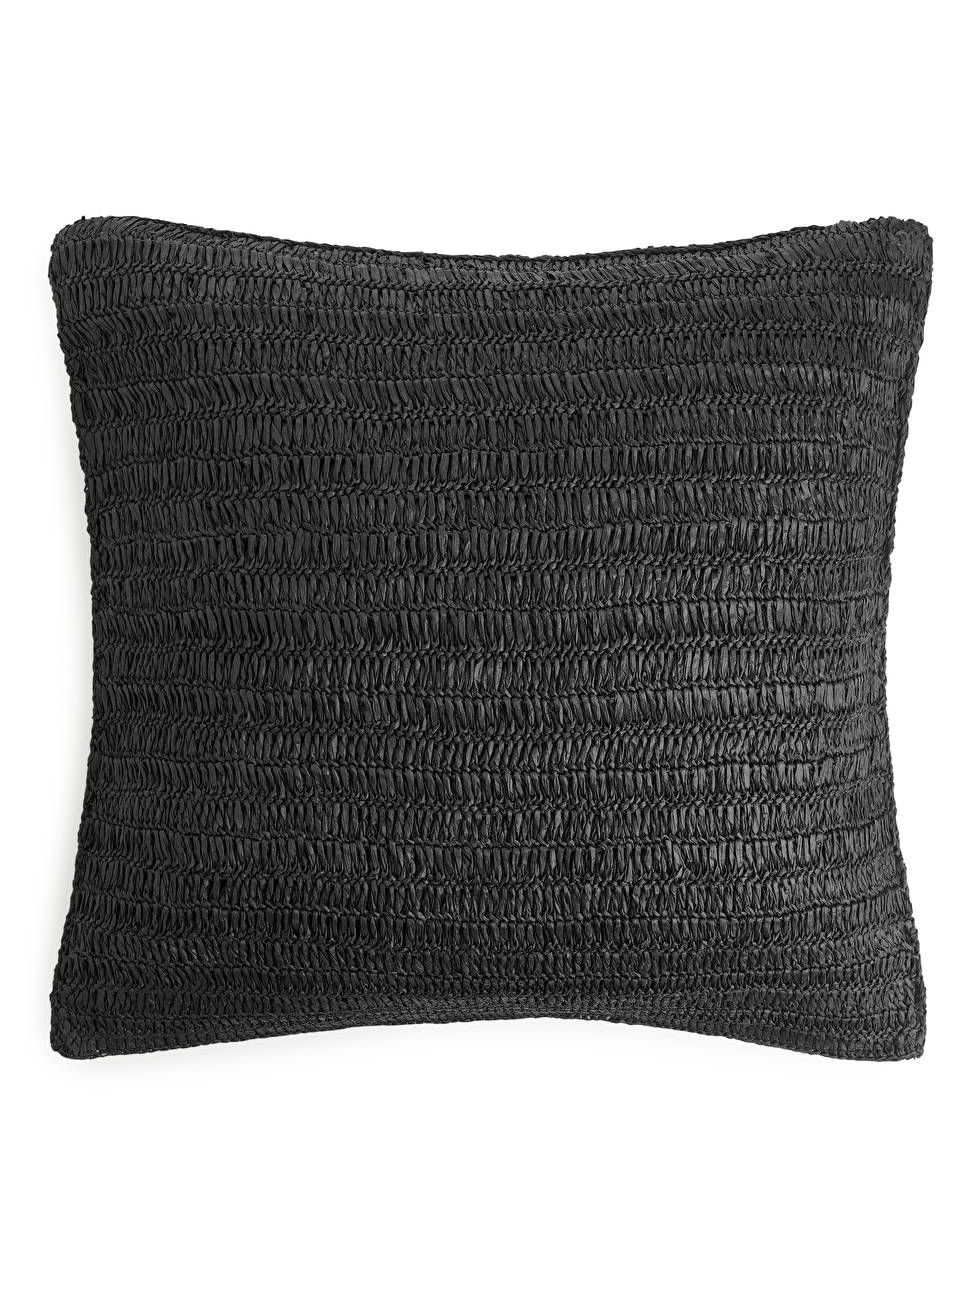 Raffia Straw Cushion Cover 50 x 50 - Black - ARKET GB | ARKET (US&UK)